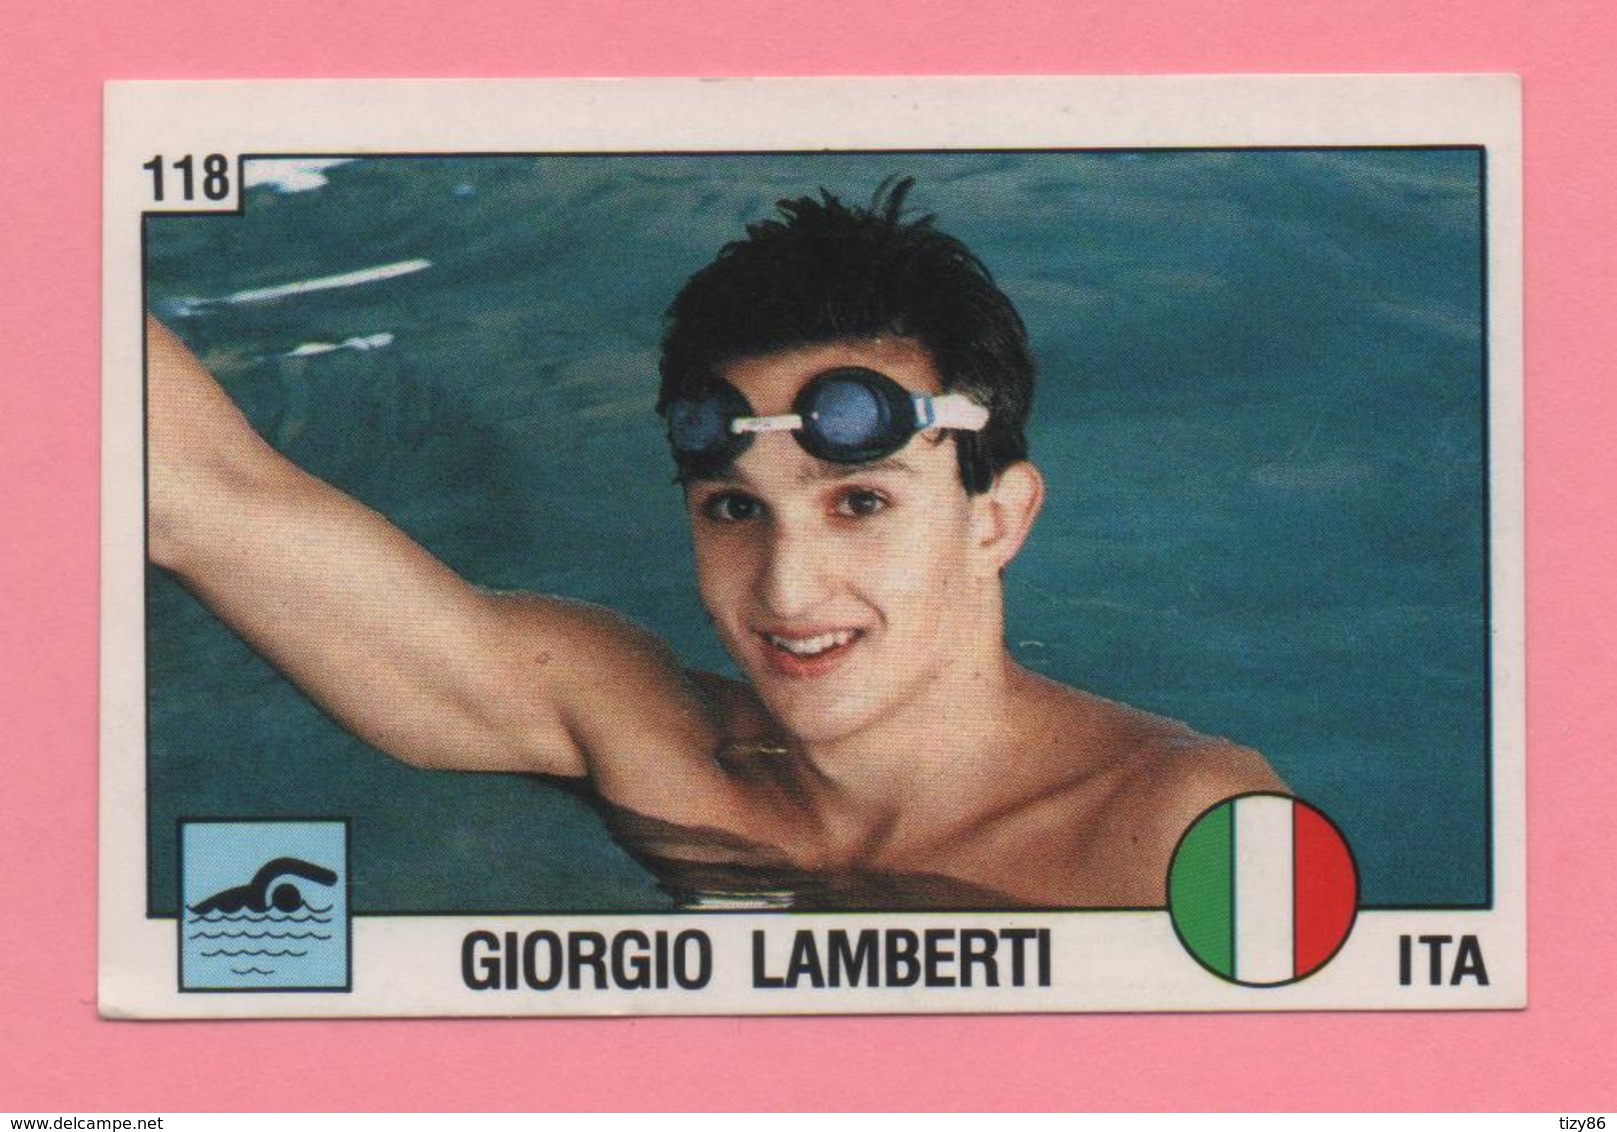 Figurina Panini 1988 N°118 - Nuoto - Giorgio Lamberti - Swimming